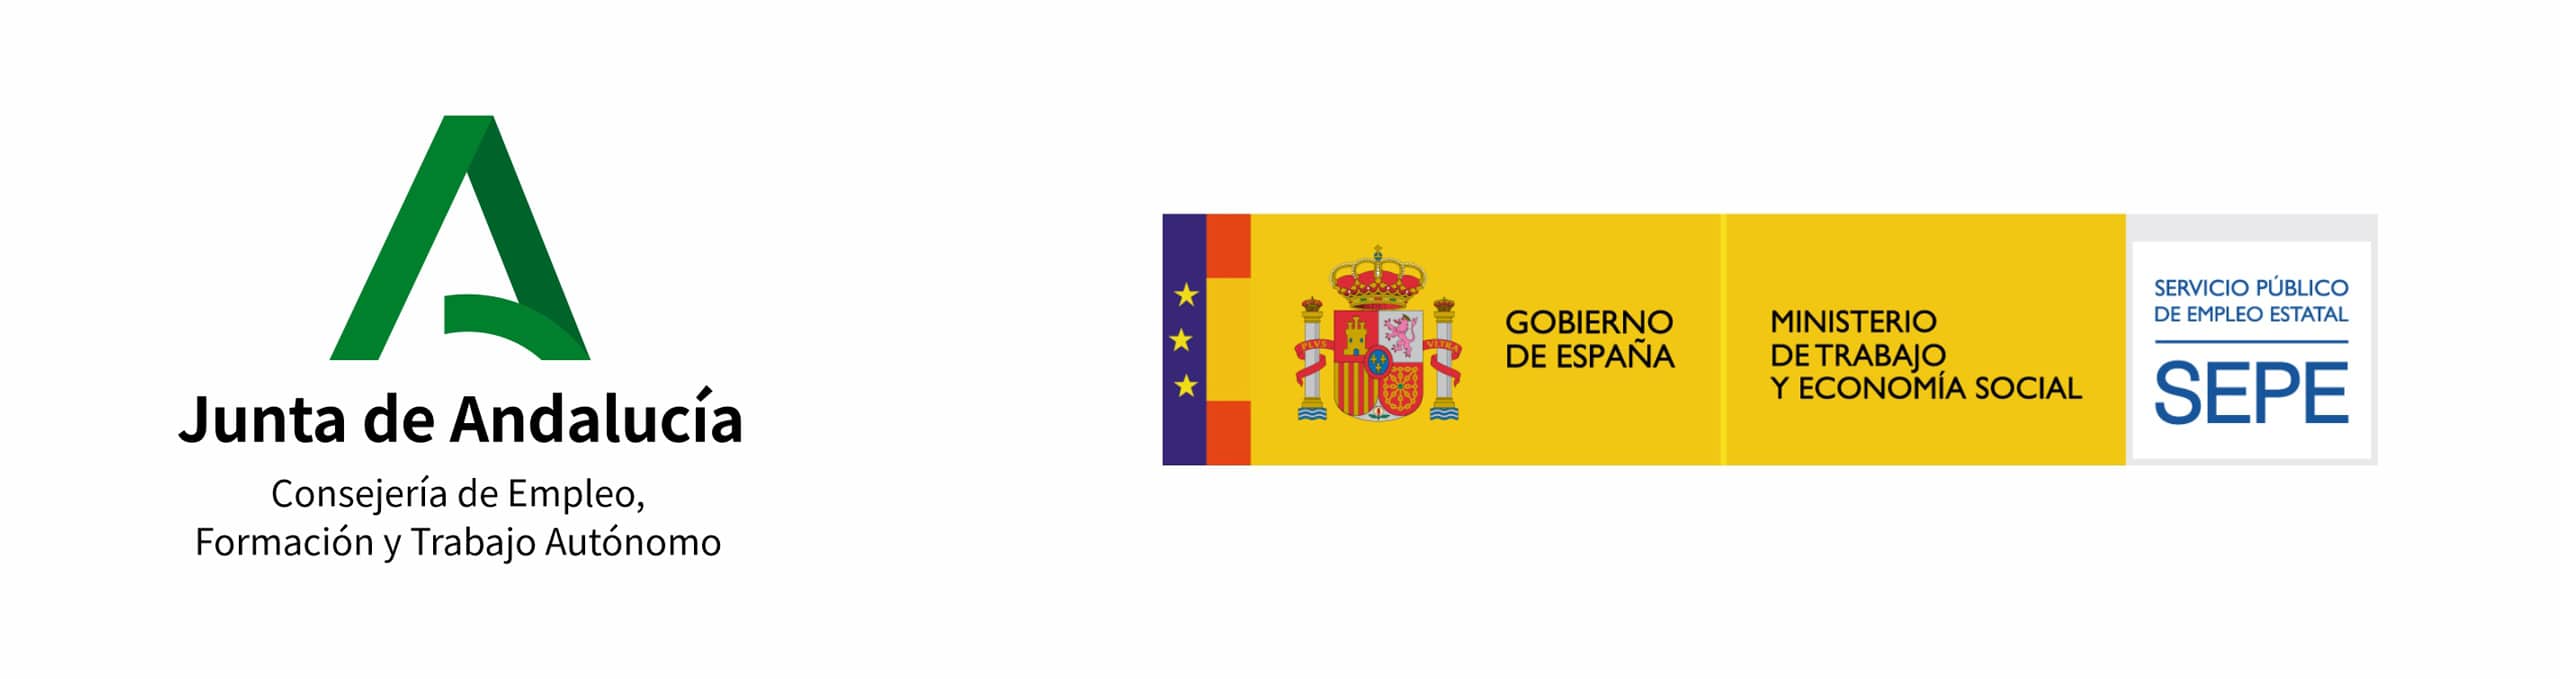 Logo junta de andalucia y SEPE